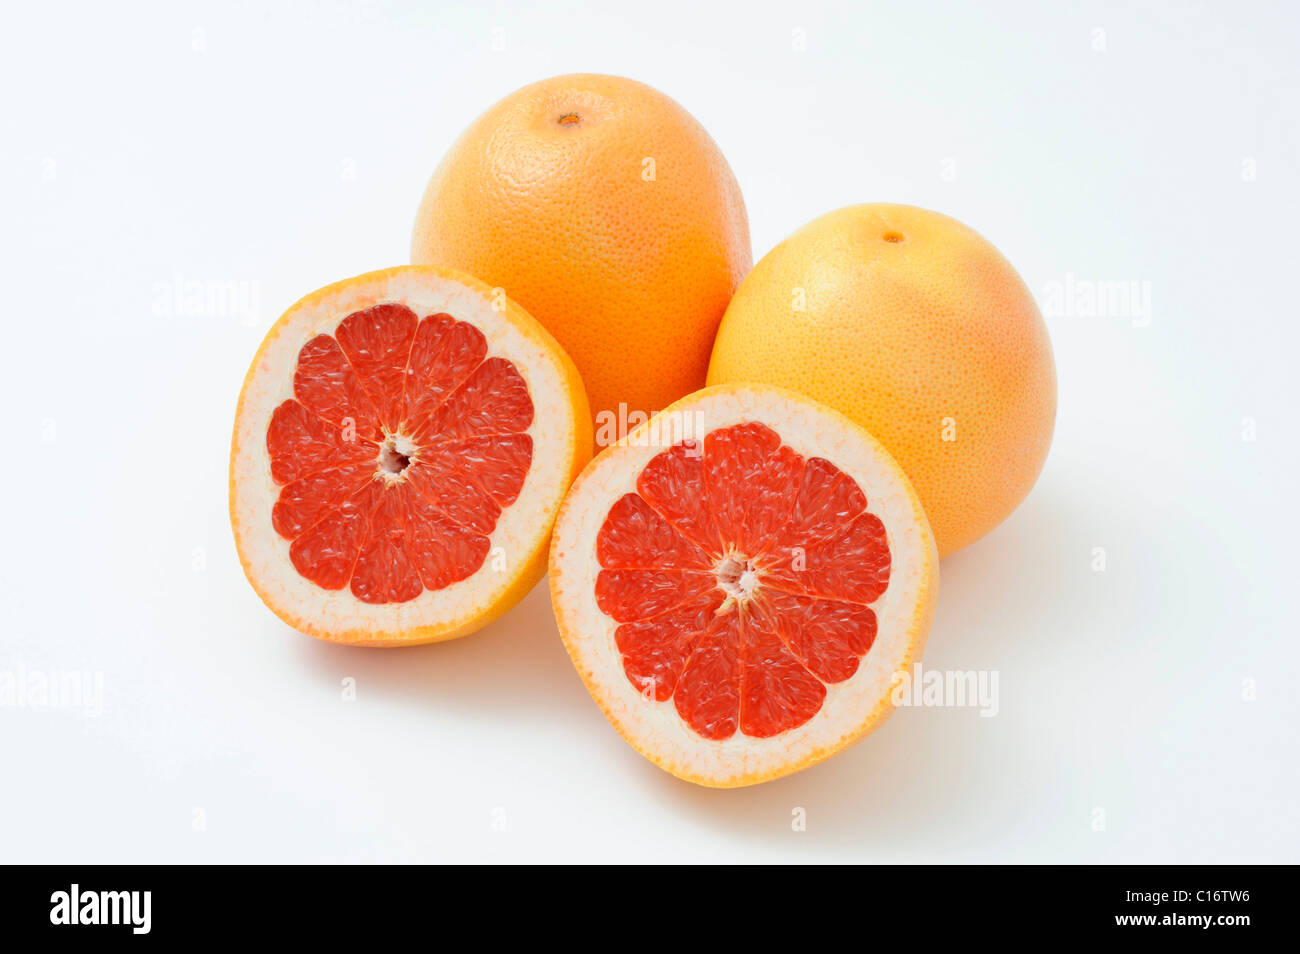 Grapefruits (Citrus x paradisi) Stock Photo